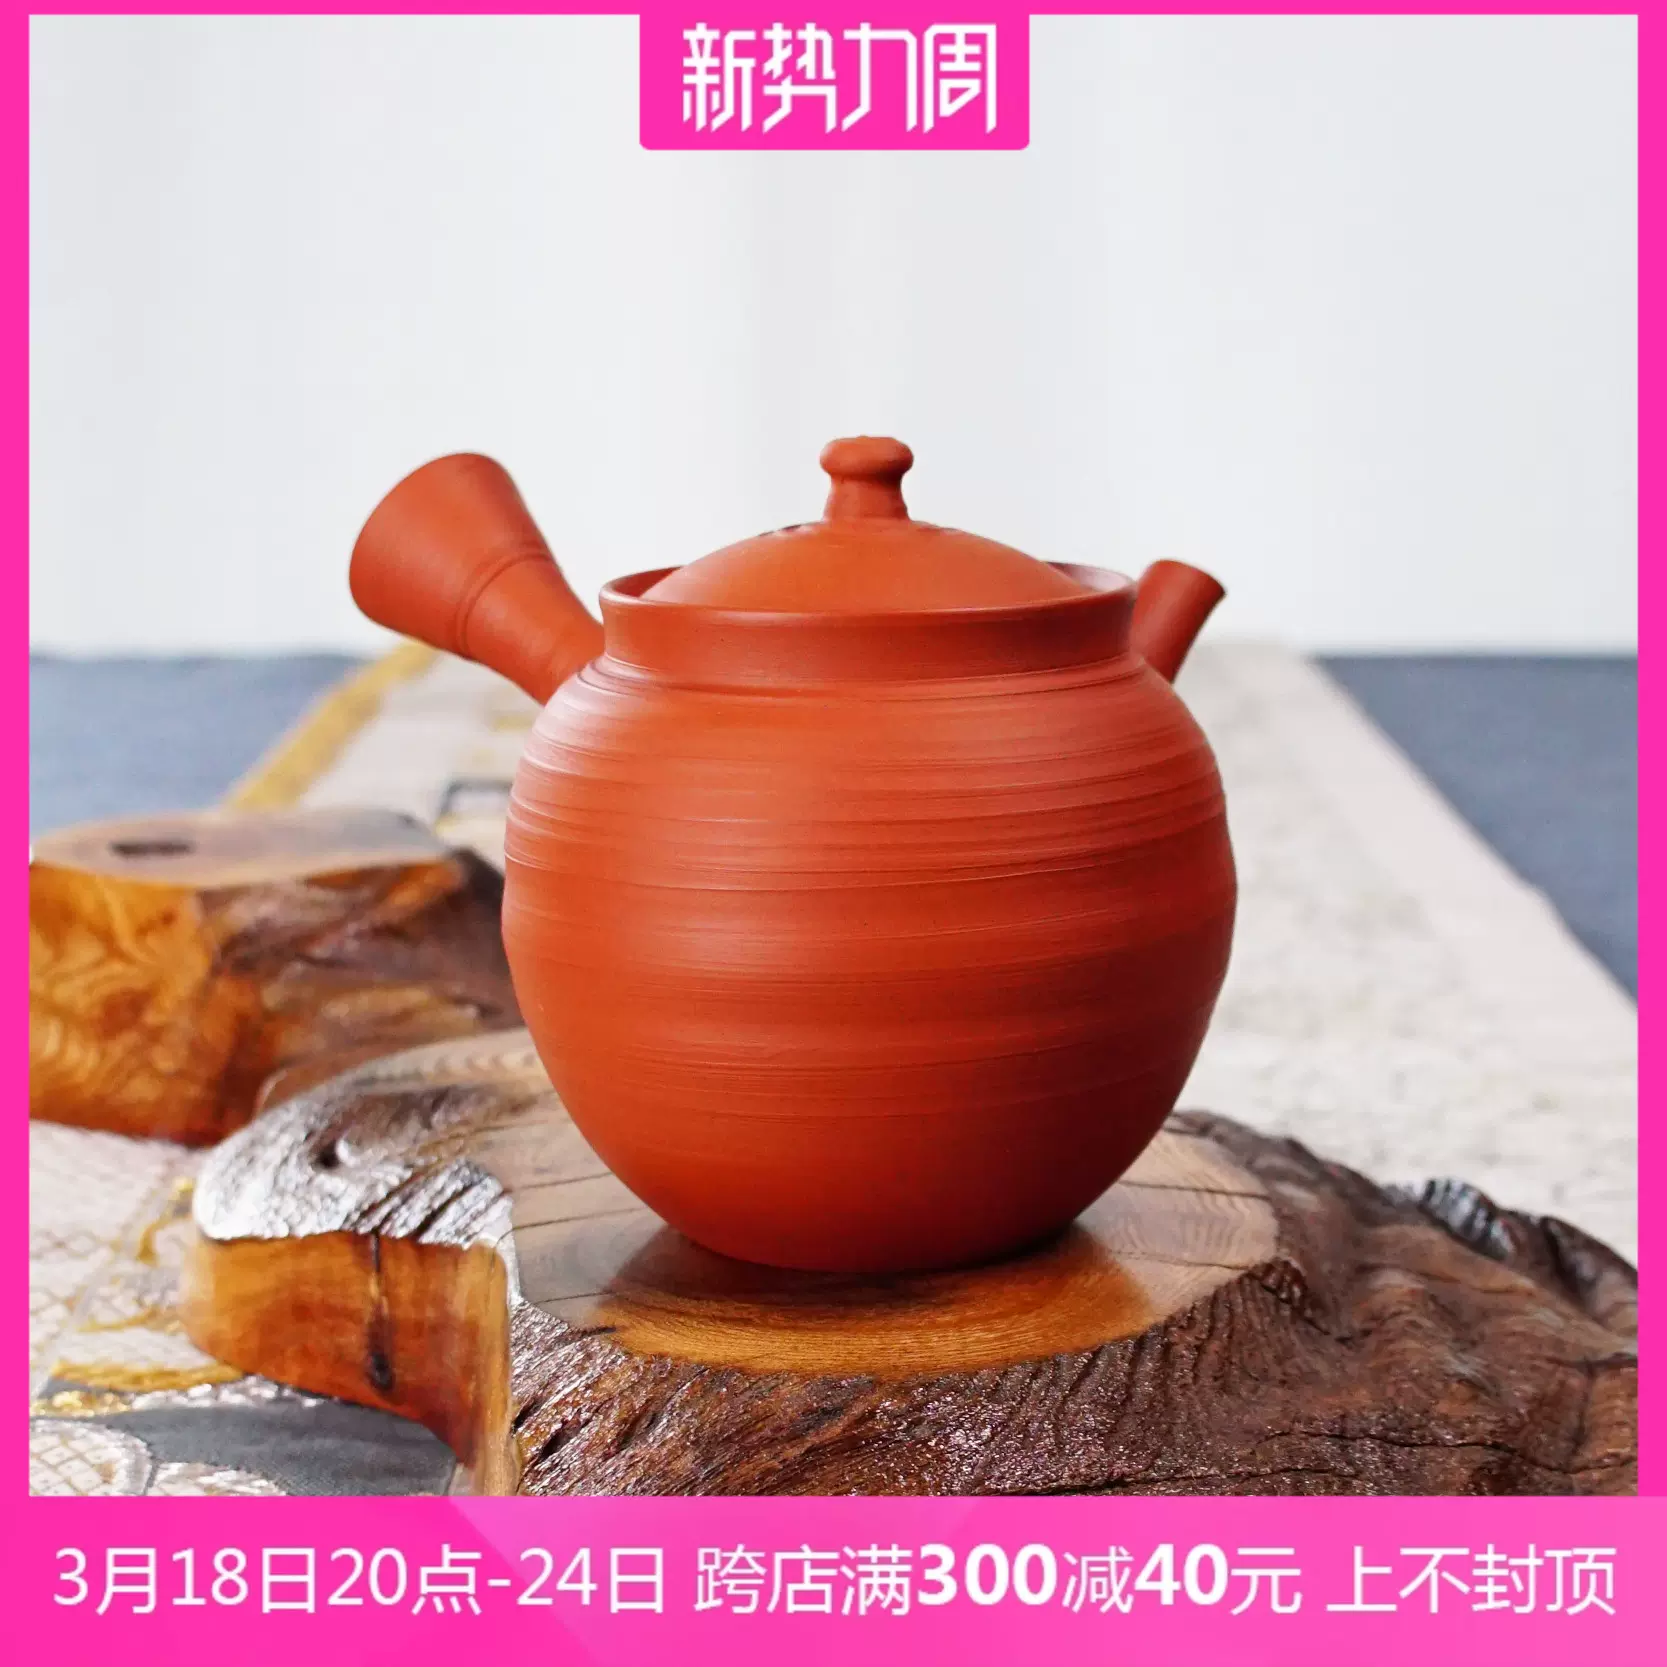 日本常滑烧石龙窑上村洋幸作朱泥繁花侧把急须茶壶泡茶器木盒装-Taobao 